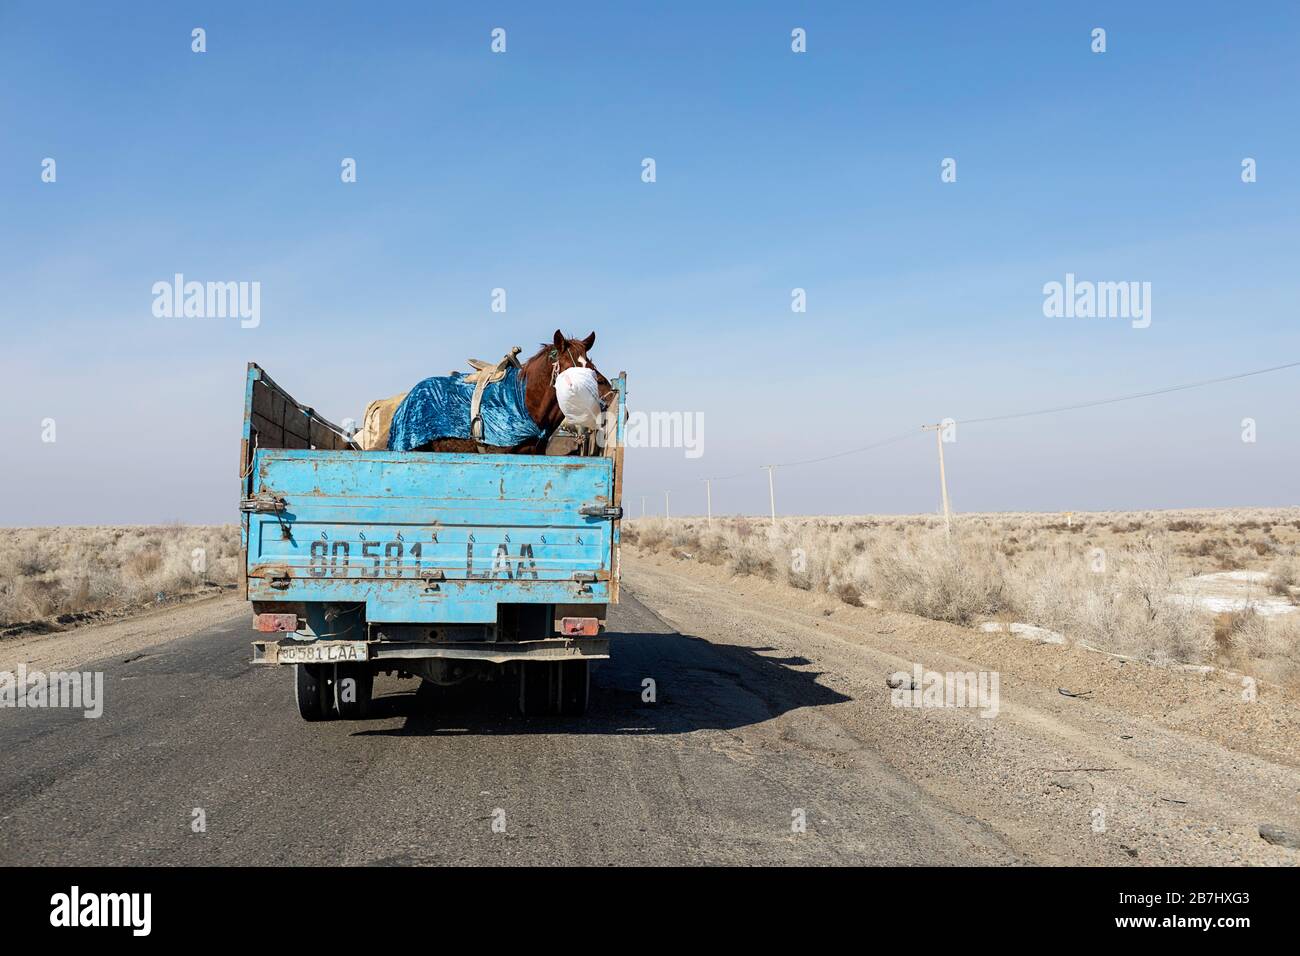 Chevaux transportés en camion, transport de chevaux sur la route entre Khiva et Boukhara, désert de Kyzylkum, Ouzbékistan Banque D'Images